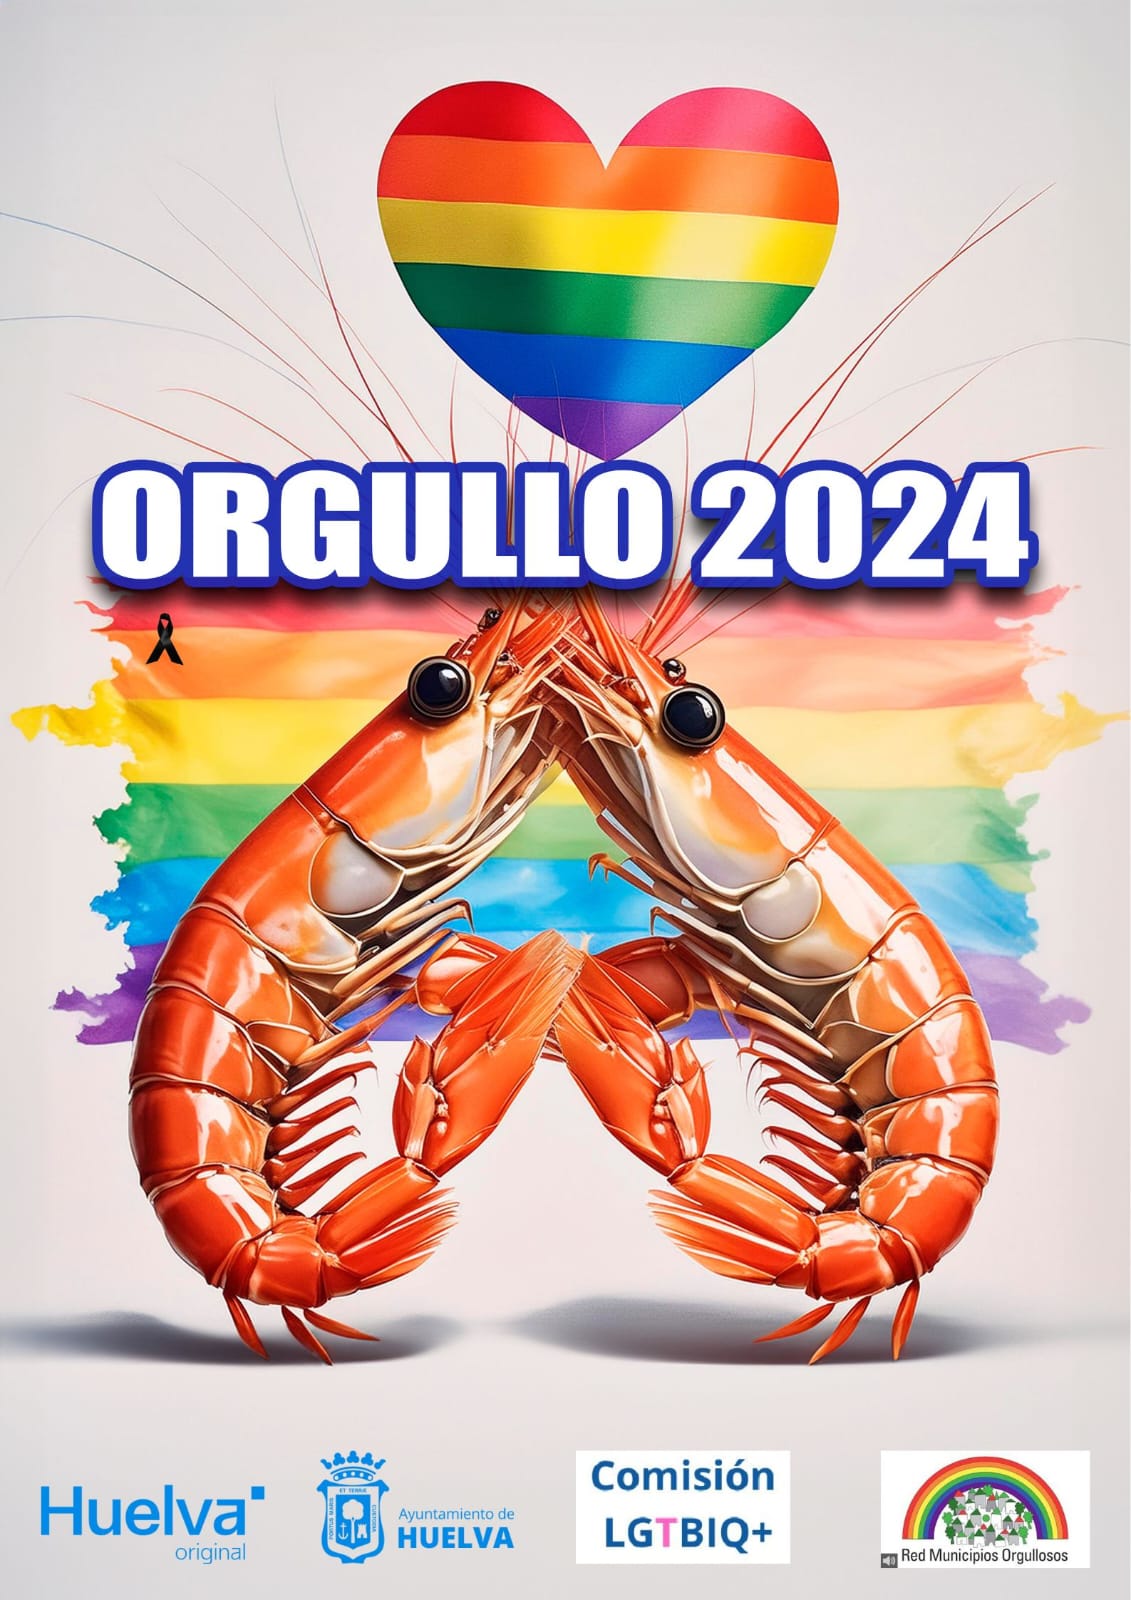 Los "langostinos gays" del Ayuntamiento de Huelva arrasan en las redes